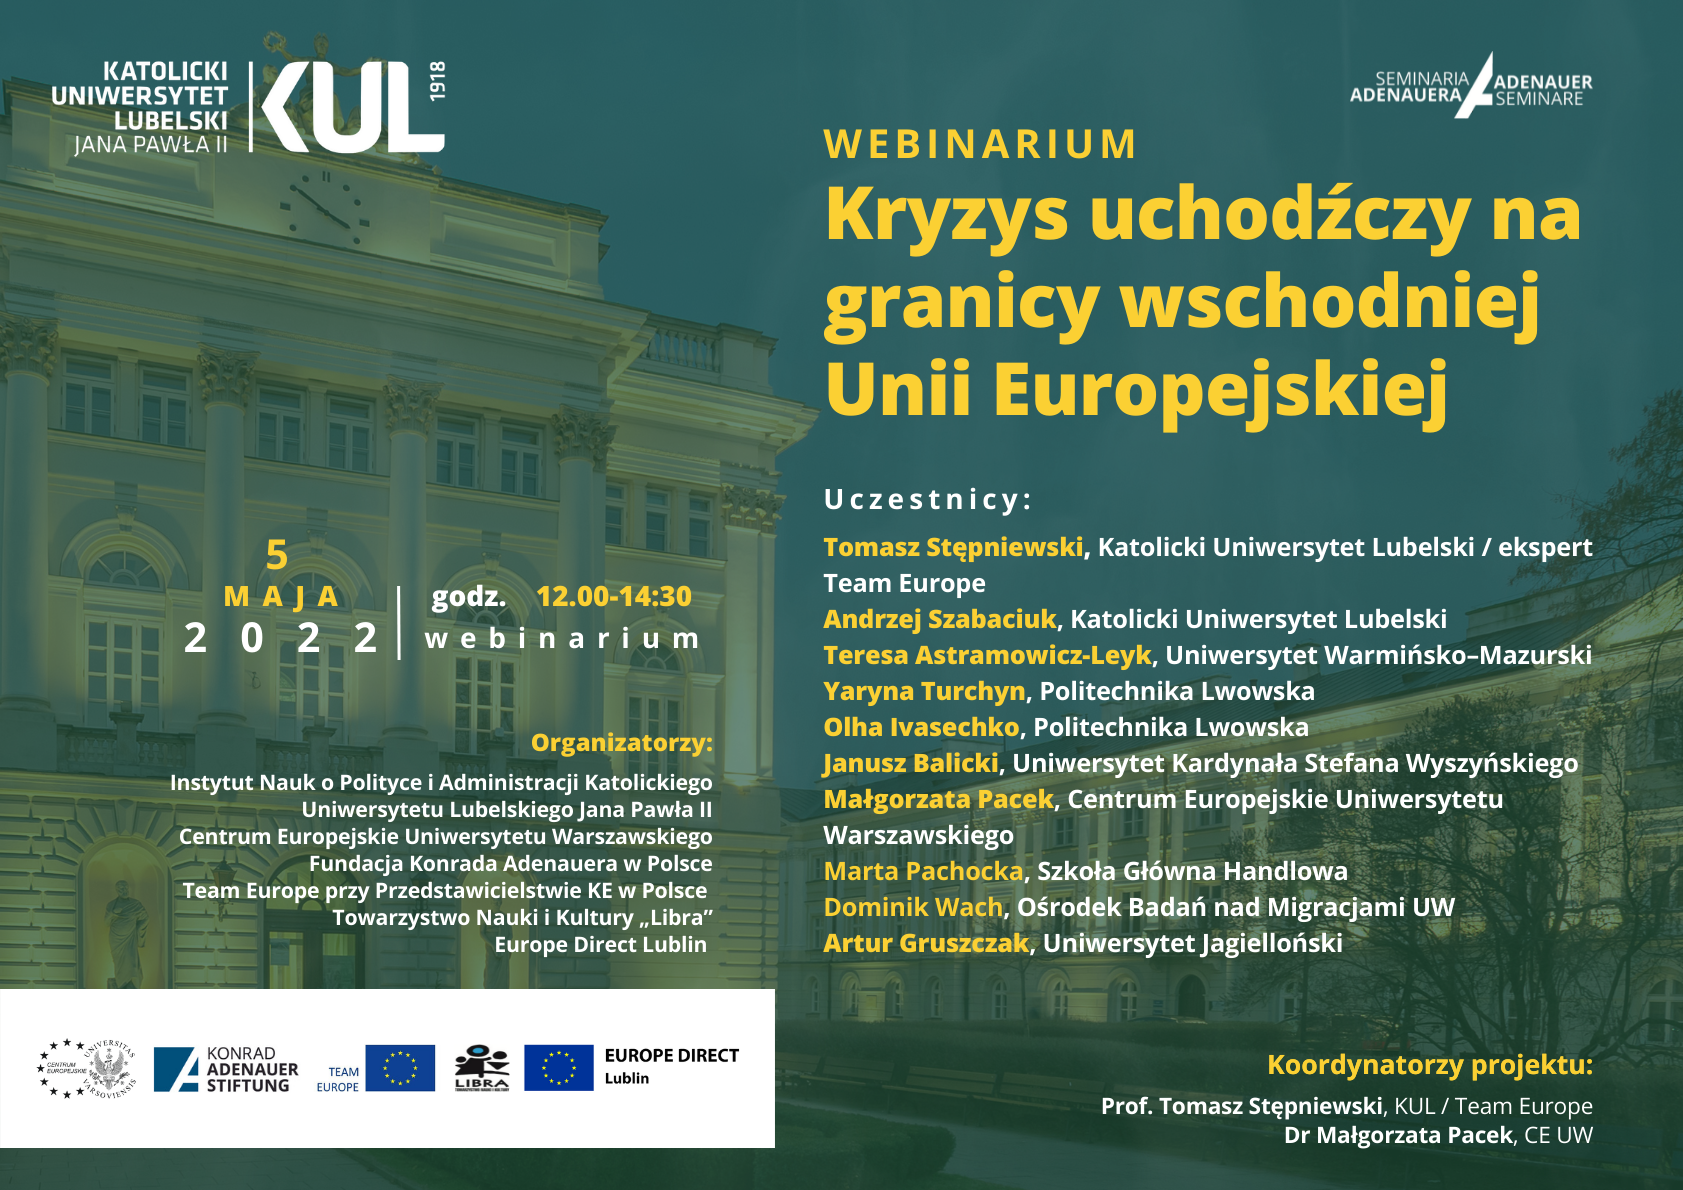 Kryzys_uchodzczy_na_granicy_wschodniej__Unii_Europejskiej_Logo_KUL